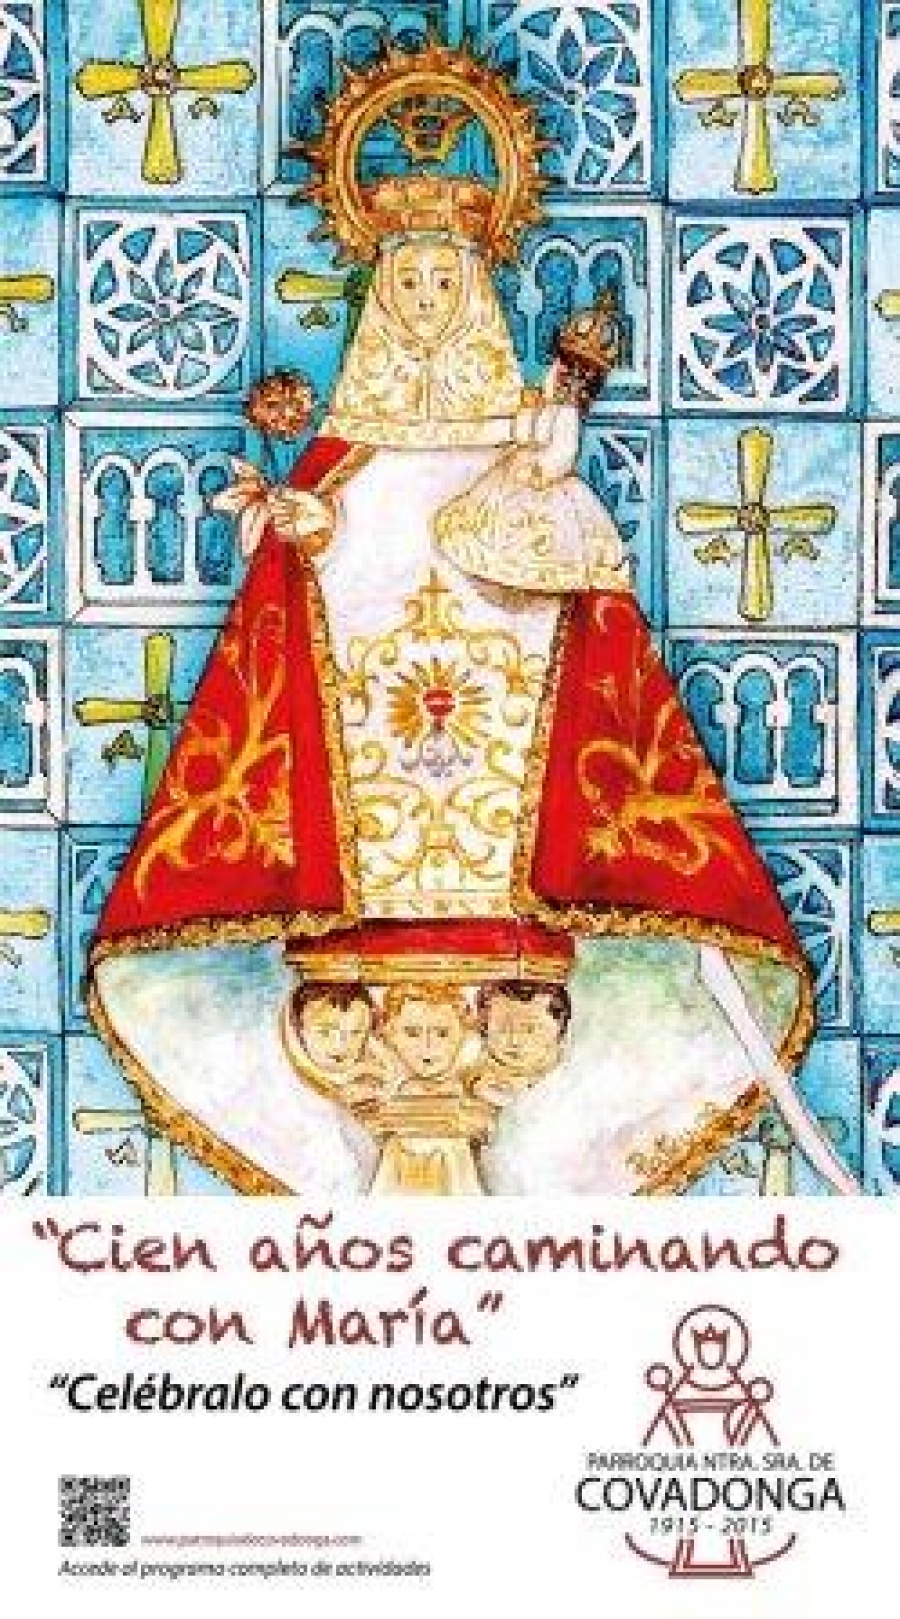 Eucaristía con bendición papal en la parroquia Nuestra Señora de Covadonga